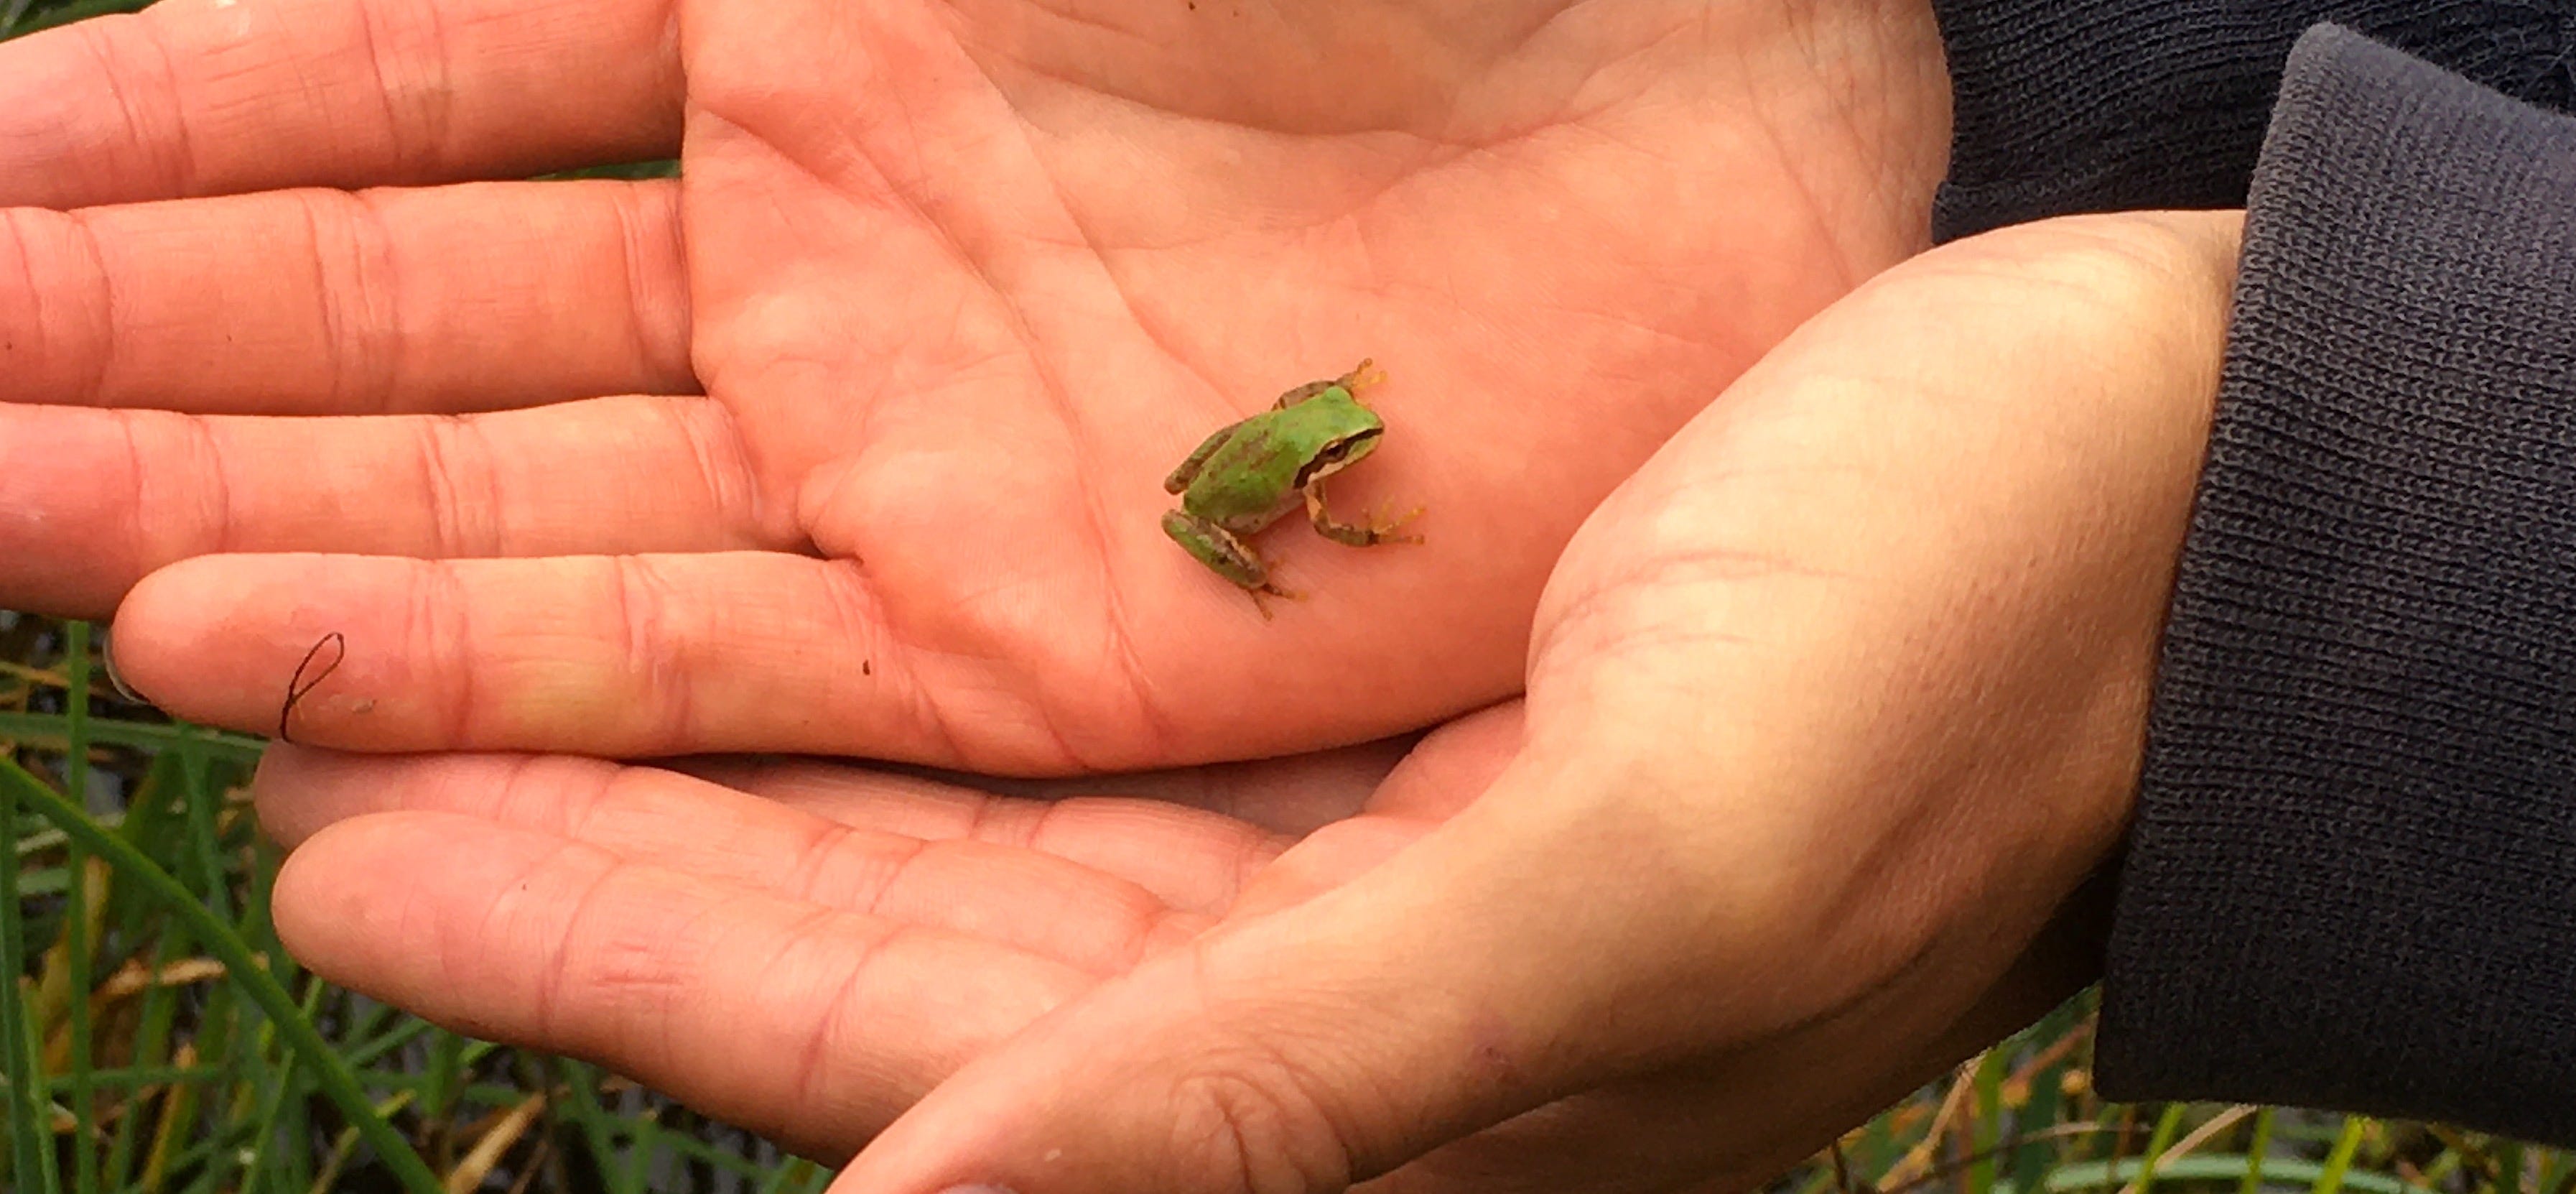 Among the Presidio's Wild Comebacks, A Tiny Frog Needs Help to Get